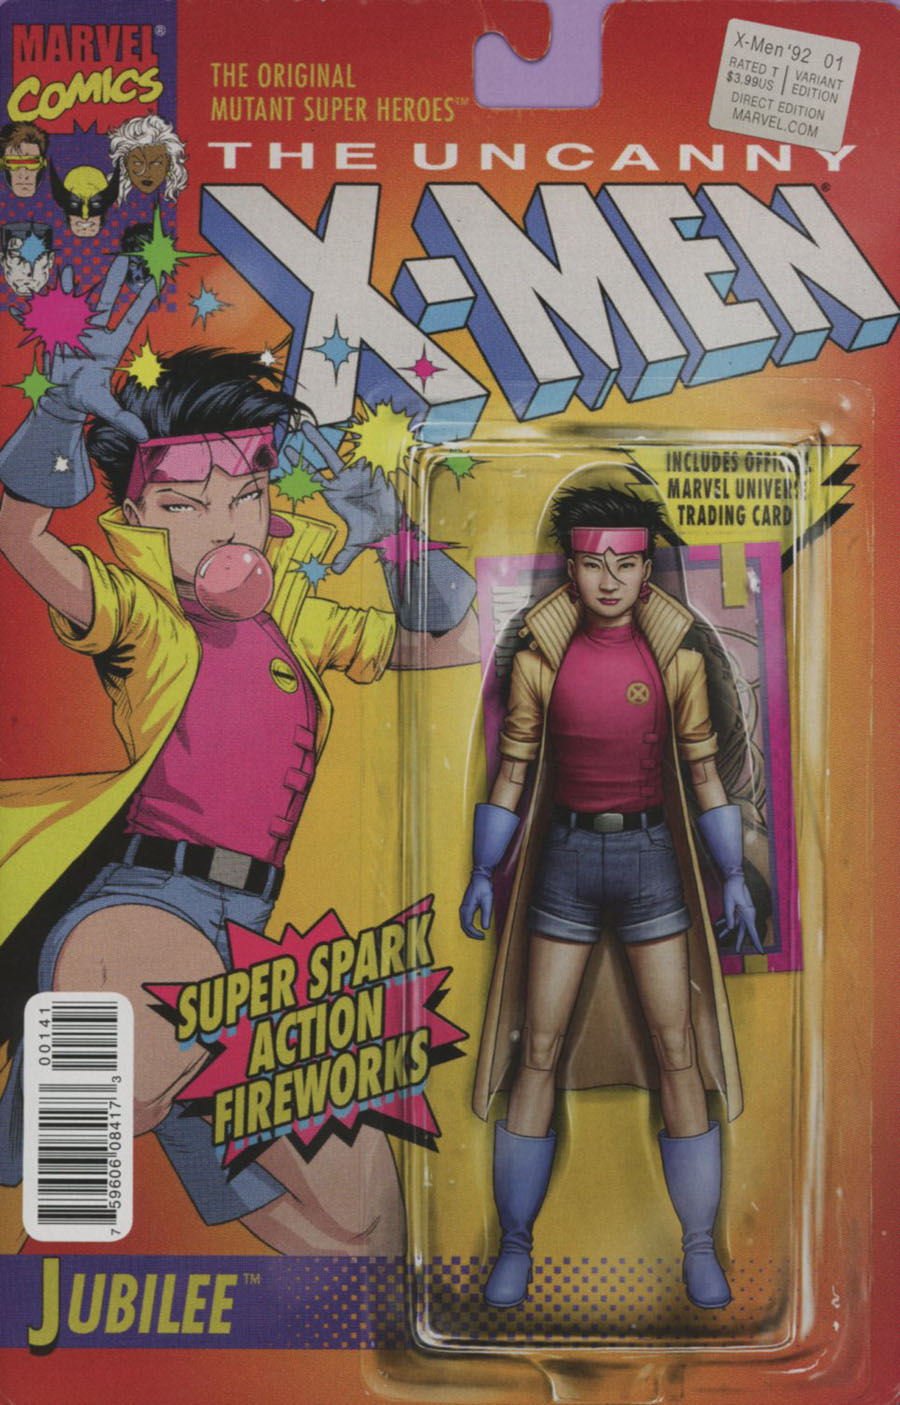 X-Men 92 Vol 2 #1 Cover C Variant John Tyler Christopher Action Figure Cover